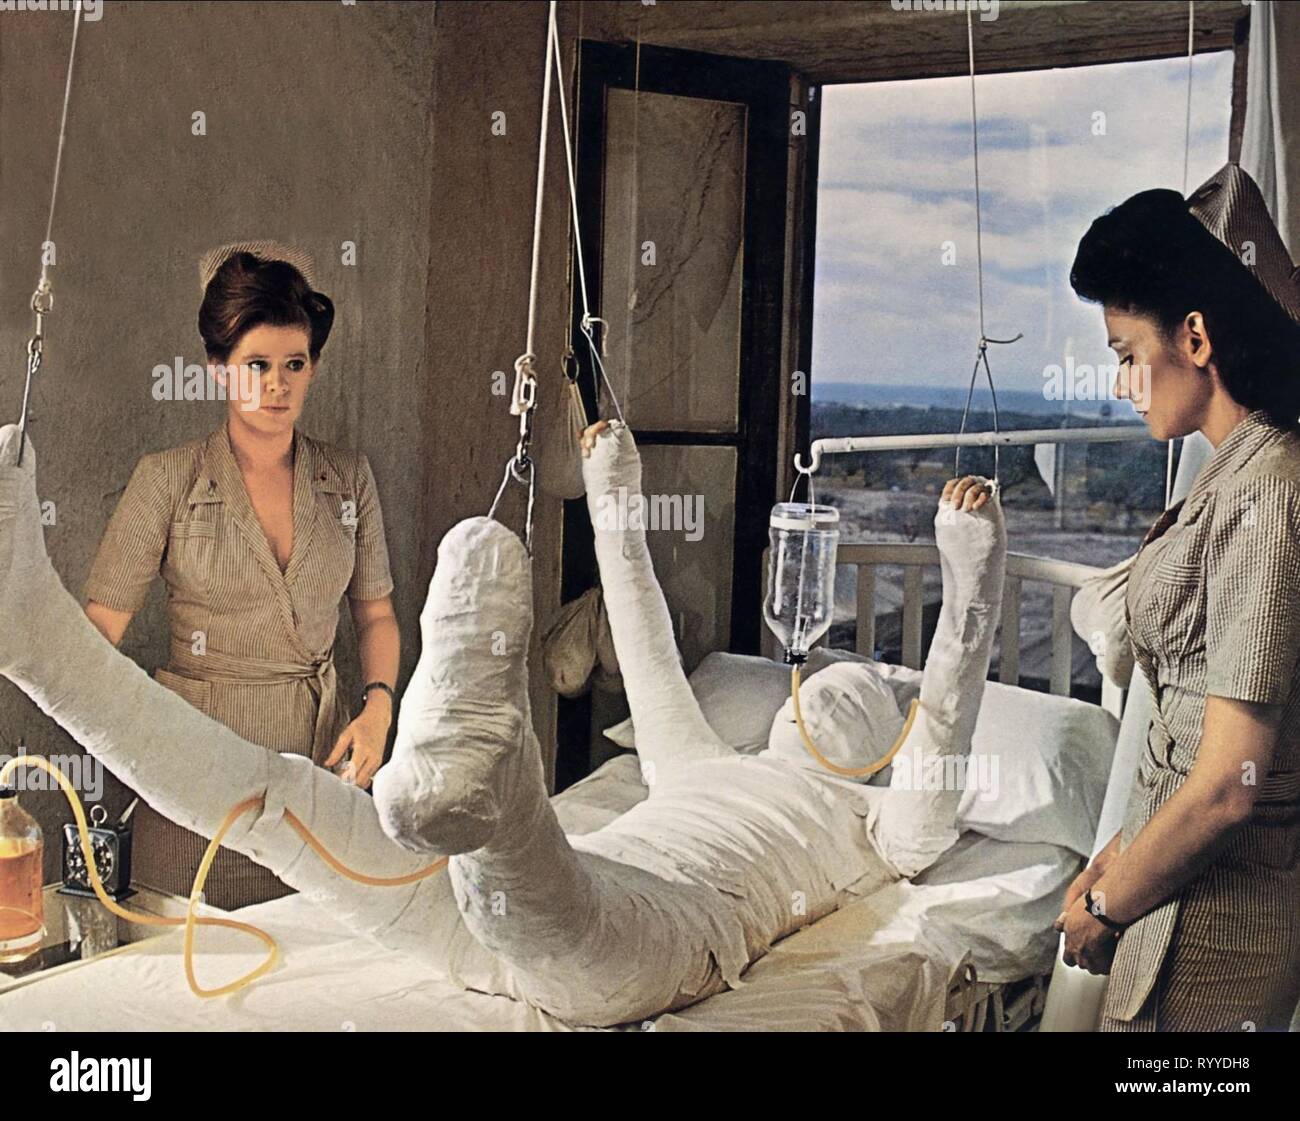 bandaged-man-in-hospital-catch-22-1970-RYYDH8.jpg